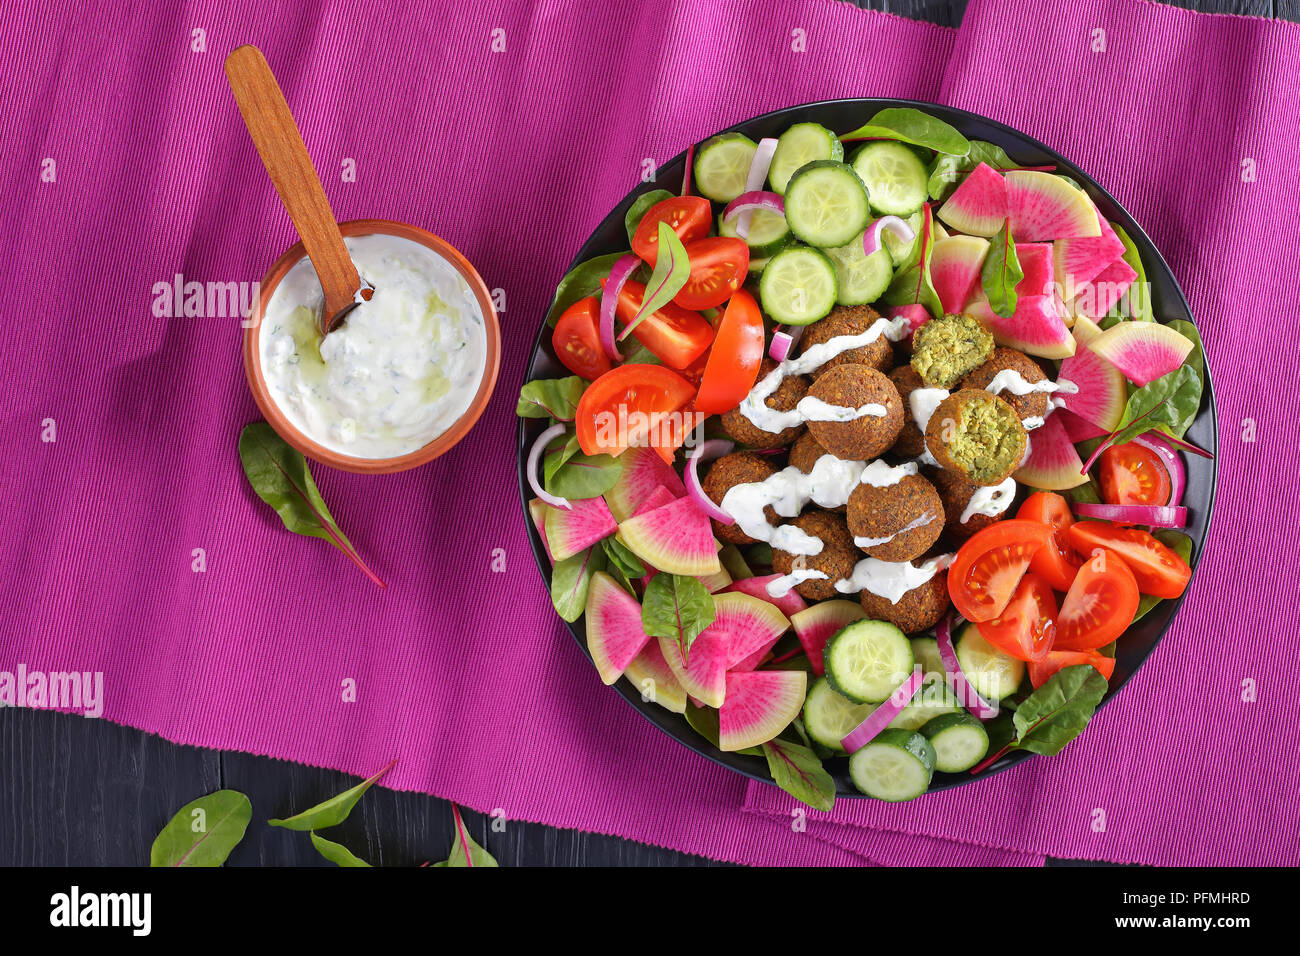 Boules de falafel frit sur la plaque avec légumes salade colorée de melon radis, concombre, feuilles de bette à carde et les tranches de tomates dans un bol de sauce tzatziki. Banque D'Images